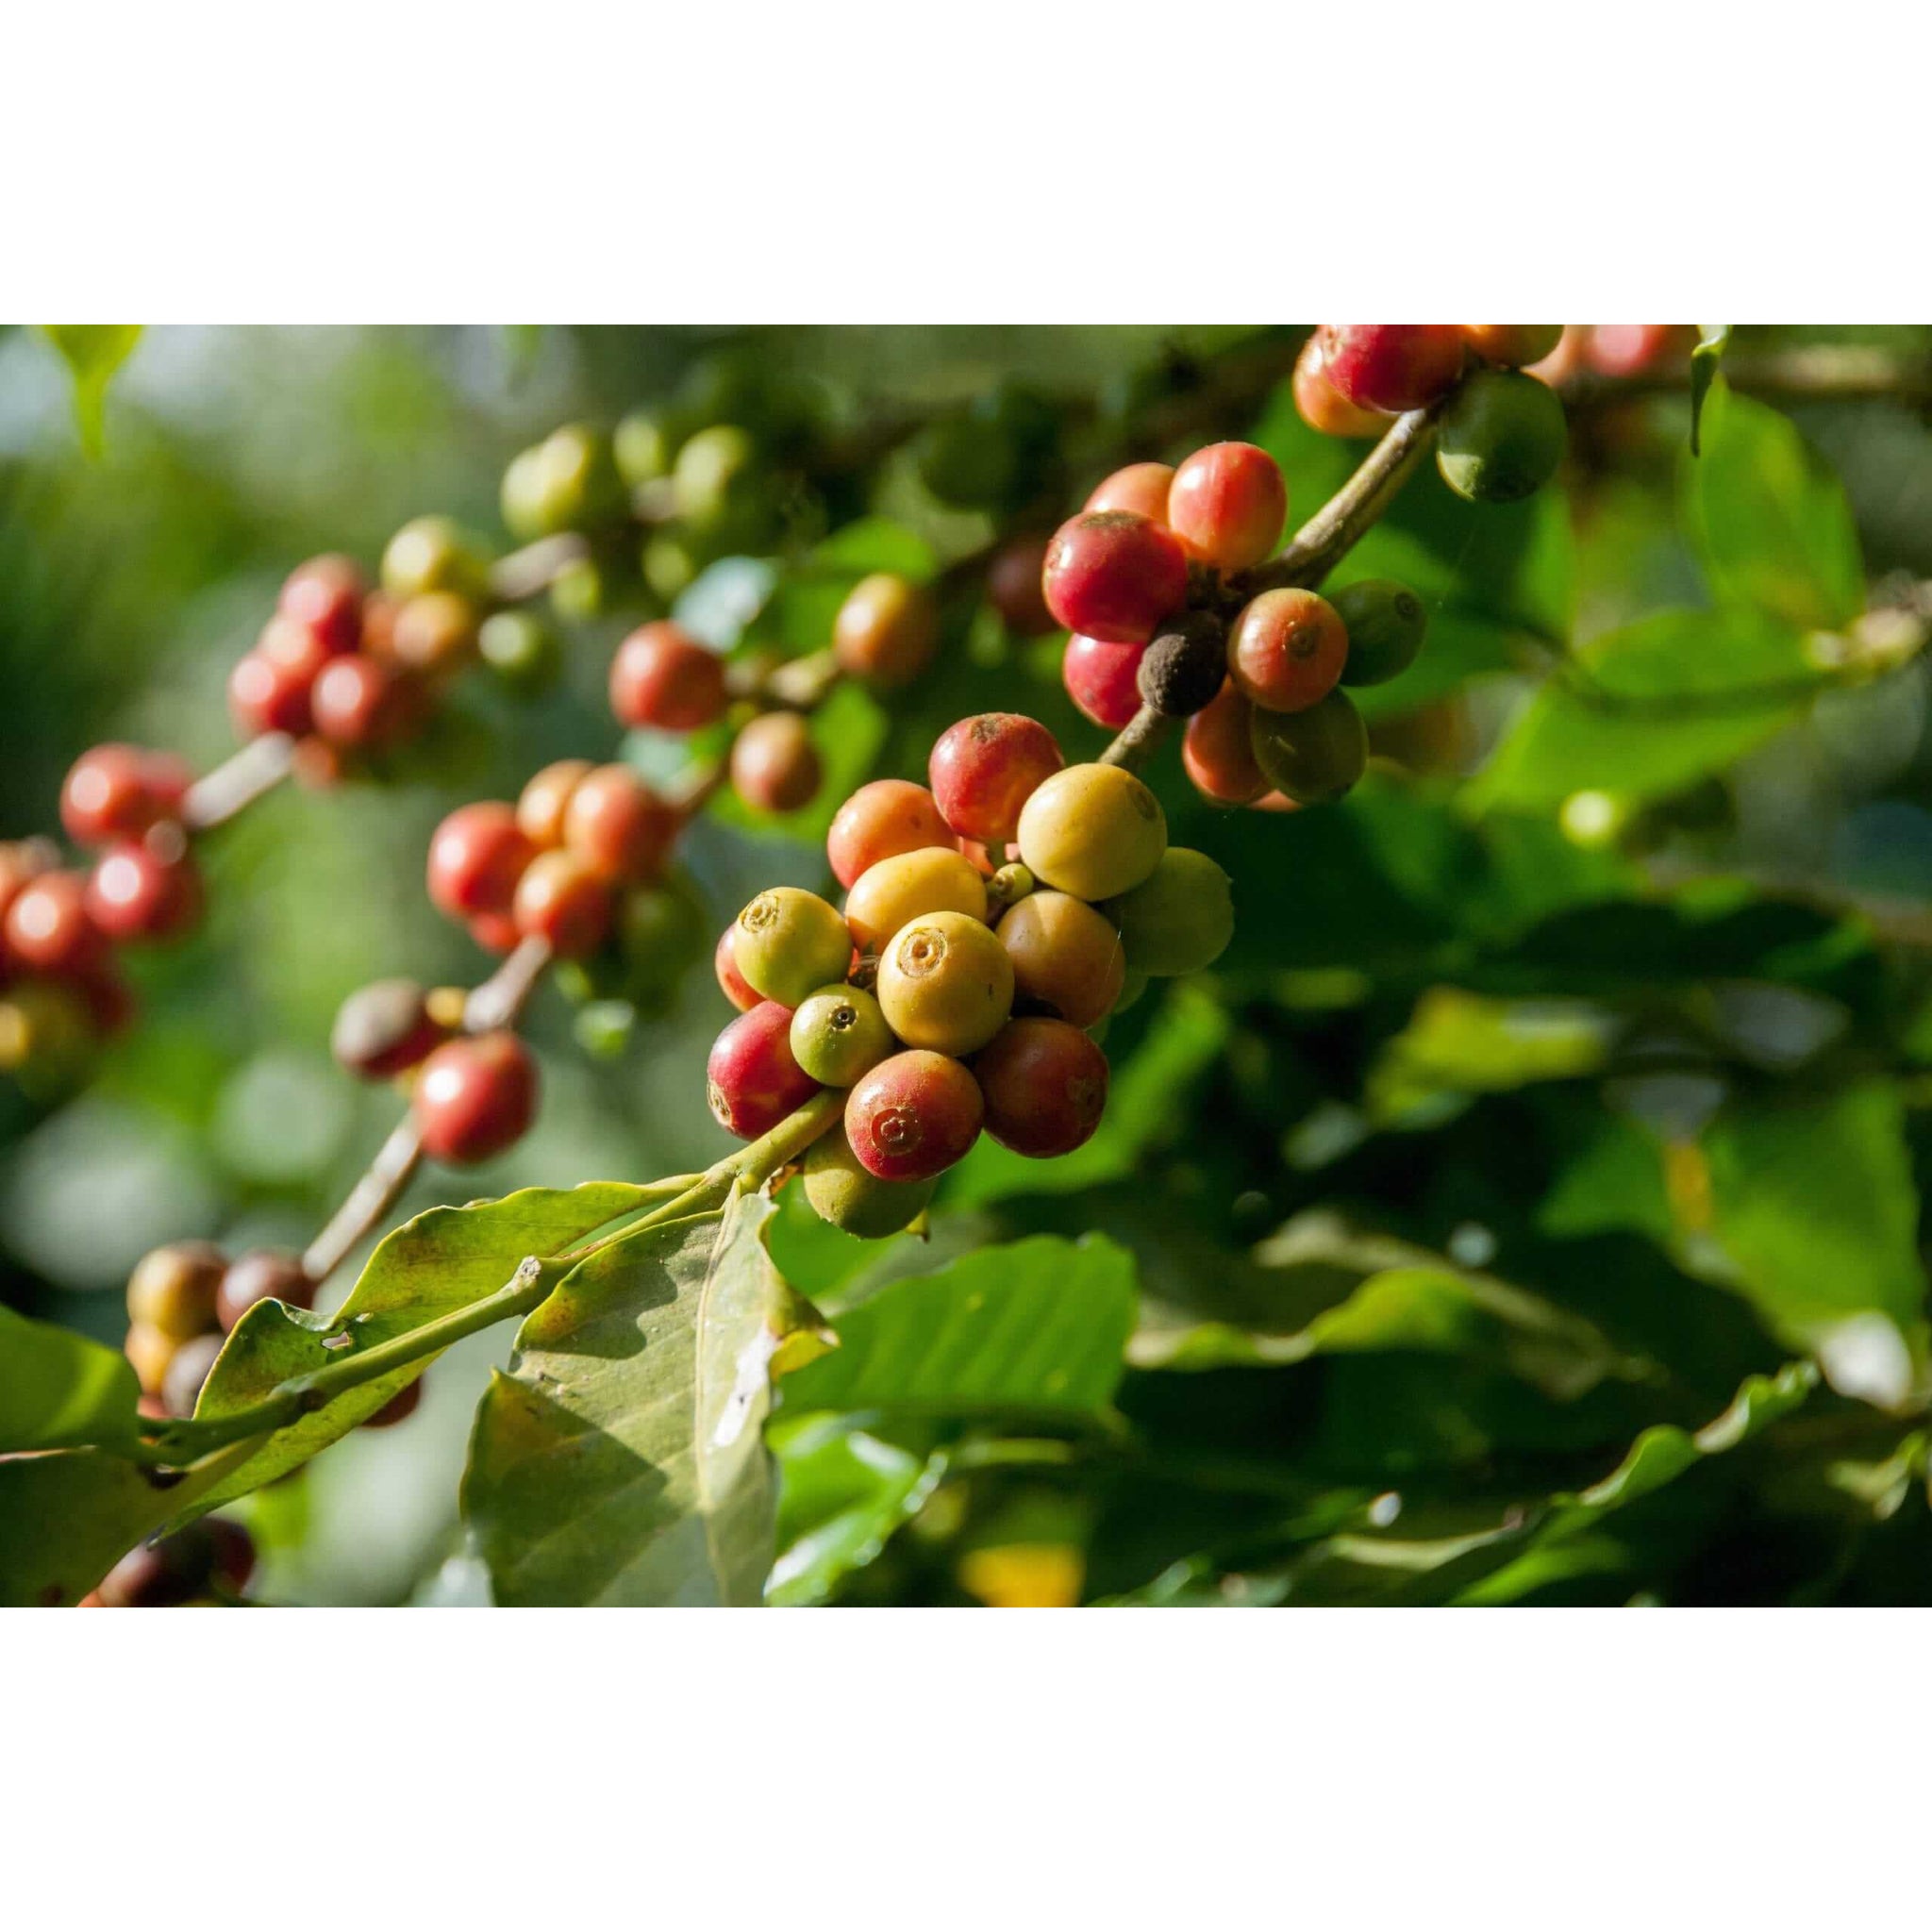 Arabica Coffee Plant | Modern house plants that clean the air